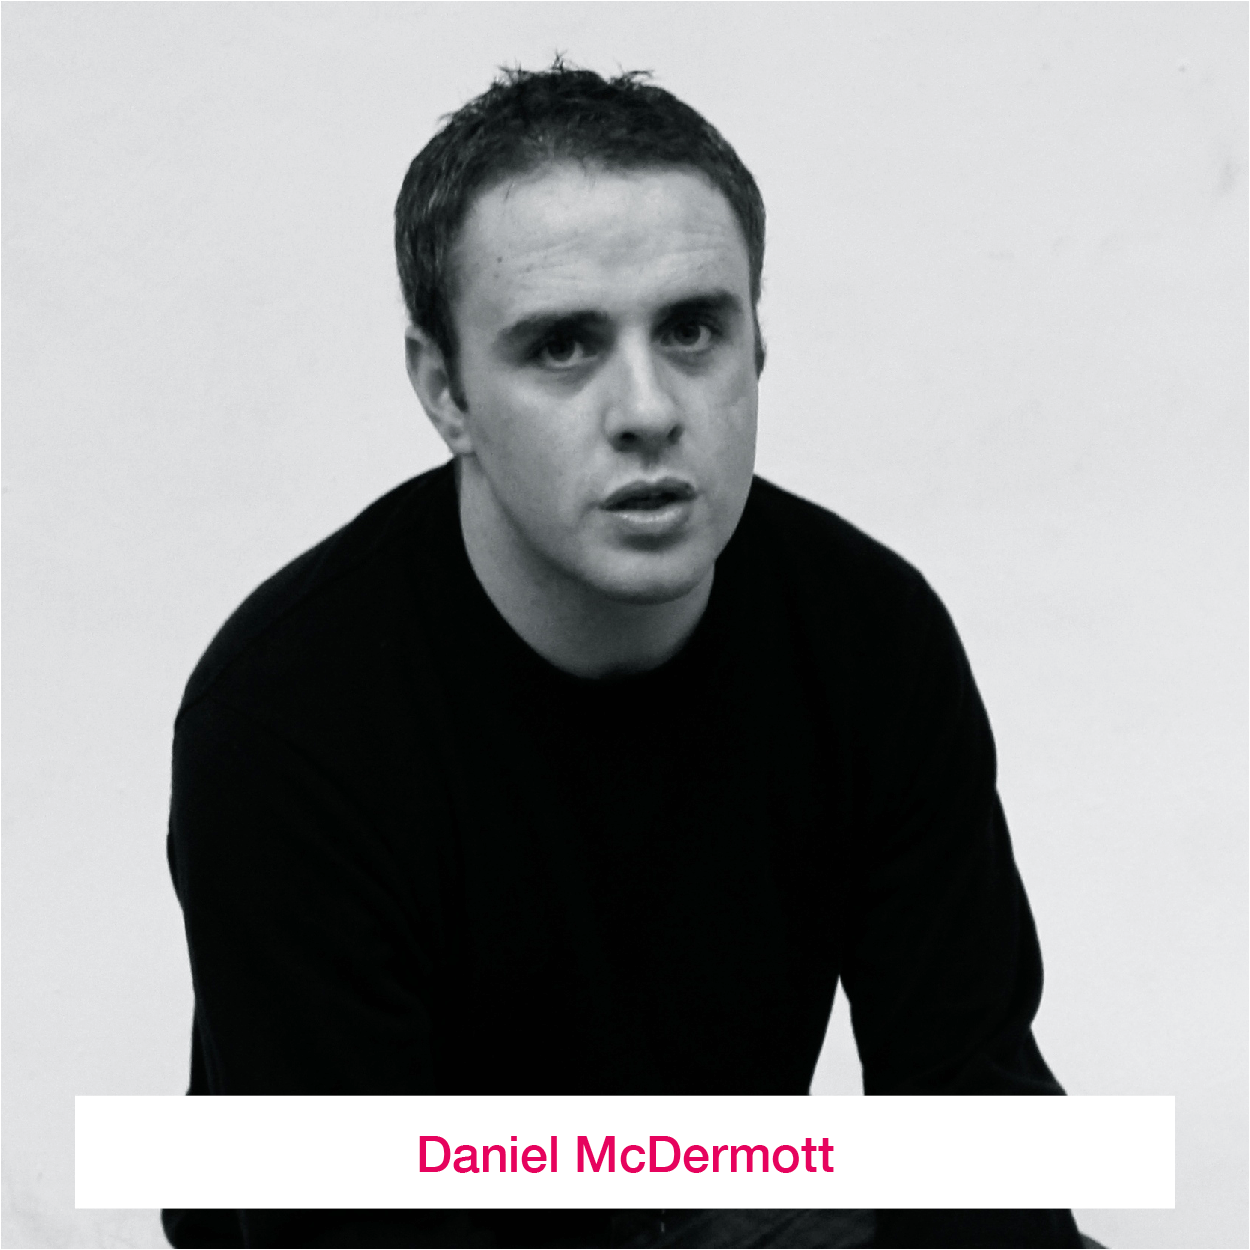 Daniel McDermott